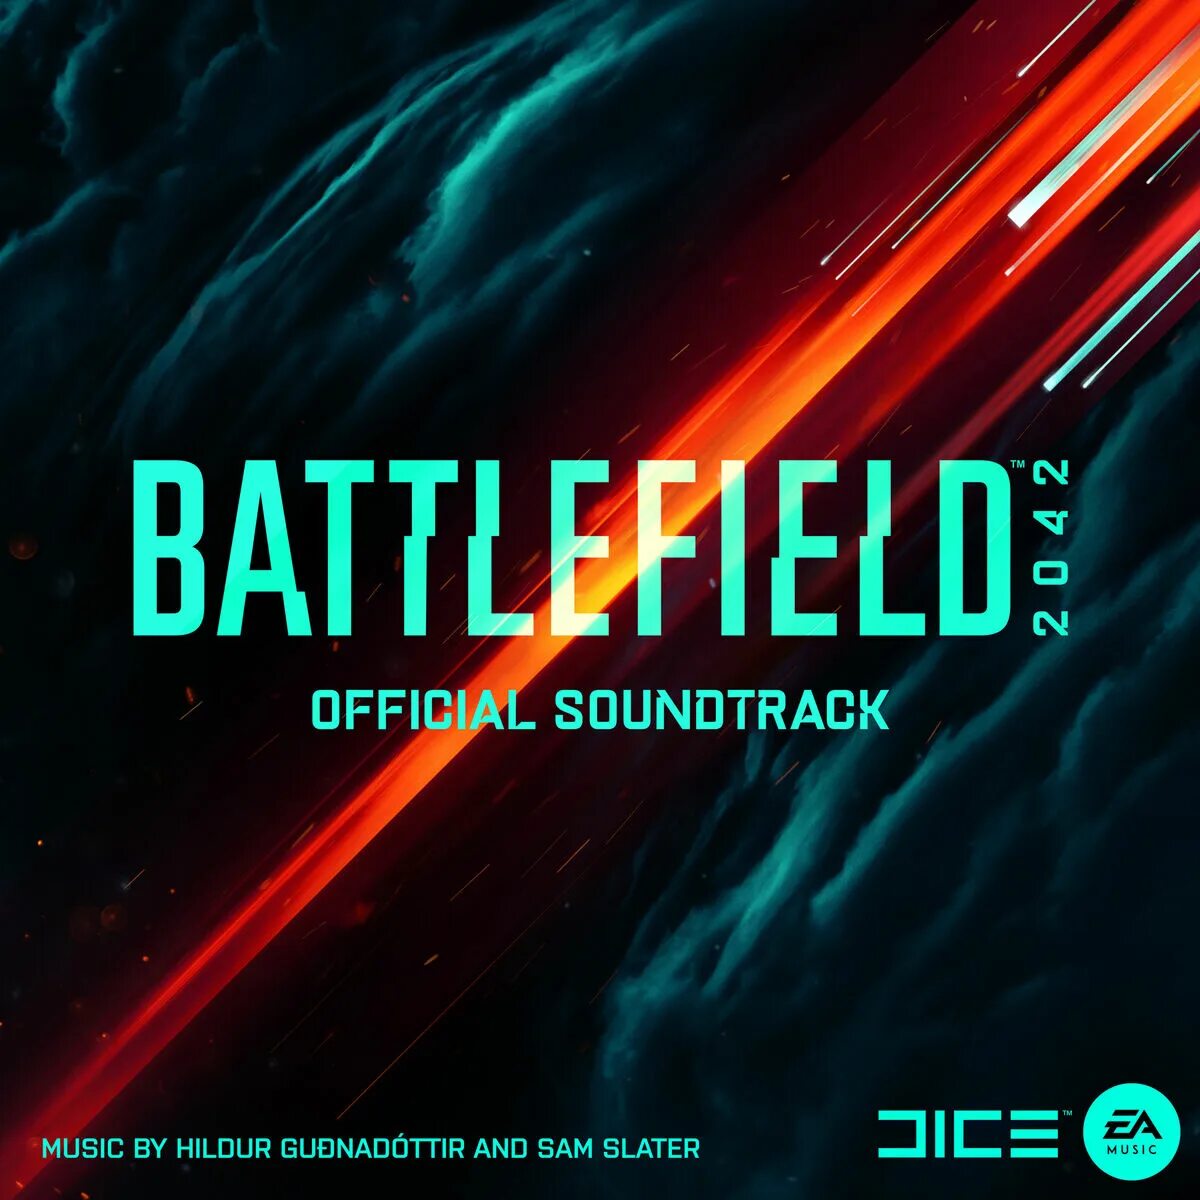 Sam Slater. Battlefield 2042 Ultimate Edition обложка. Музыка бателфилд 2042. Саундтрек номер 1. Battlefield soundtrack